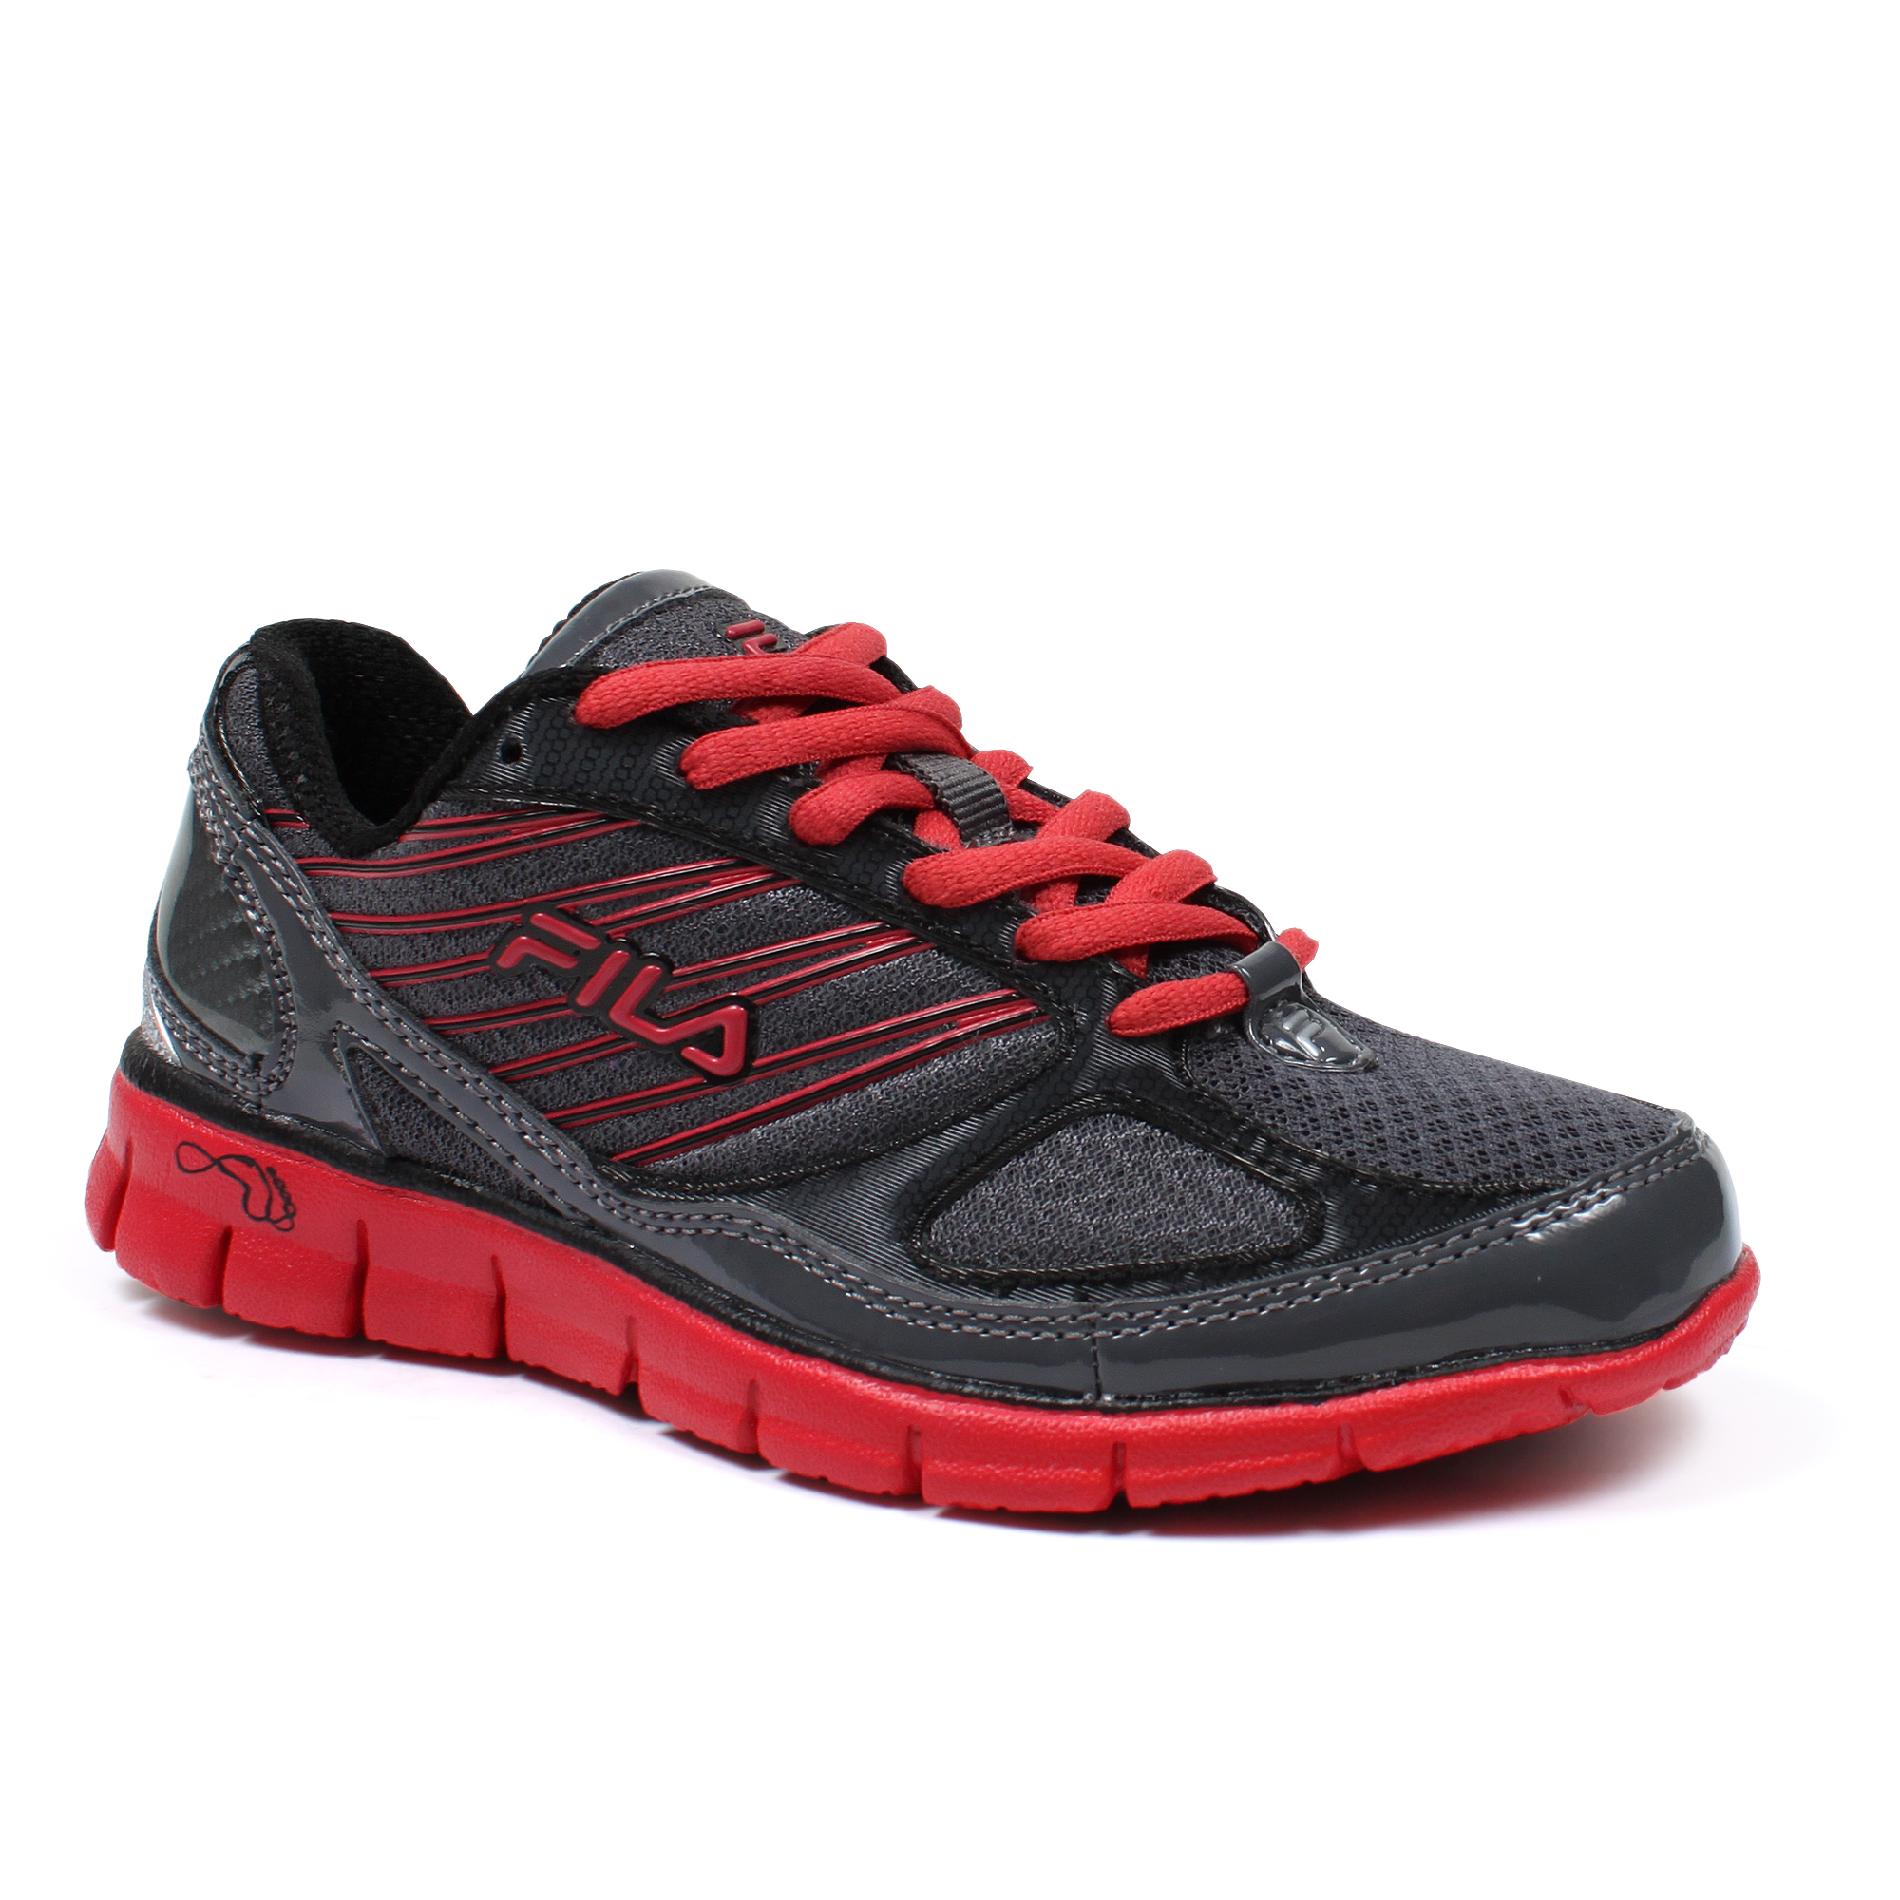 Fila Boy's 2A Advanced Athletic Shoe - Grey/Red